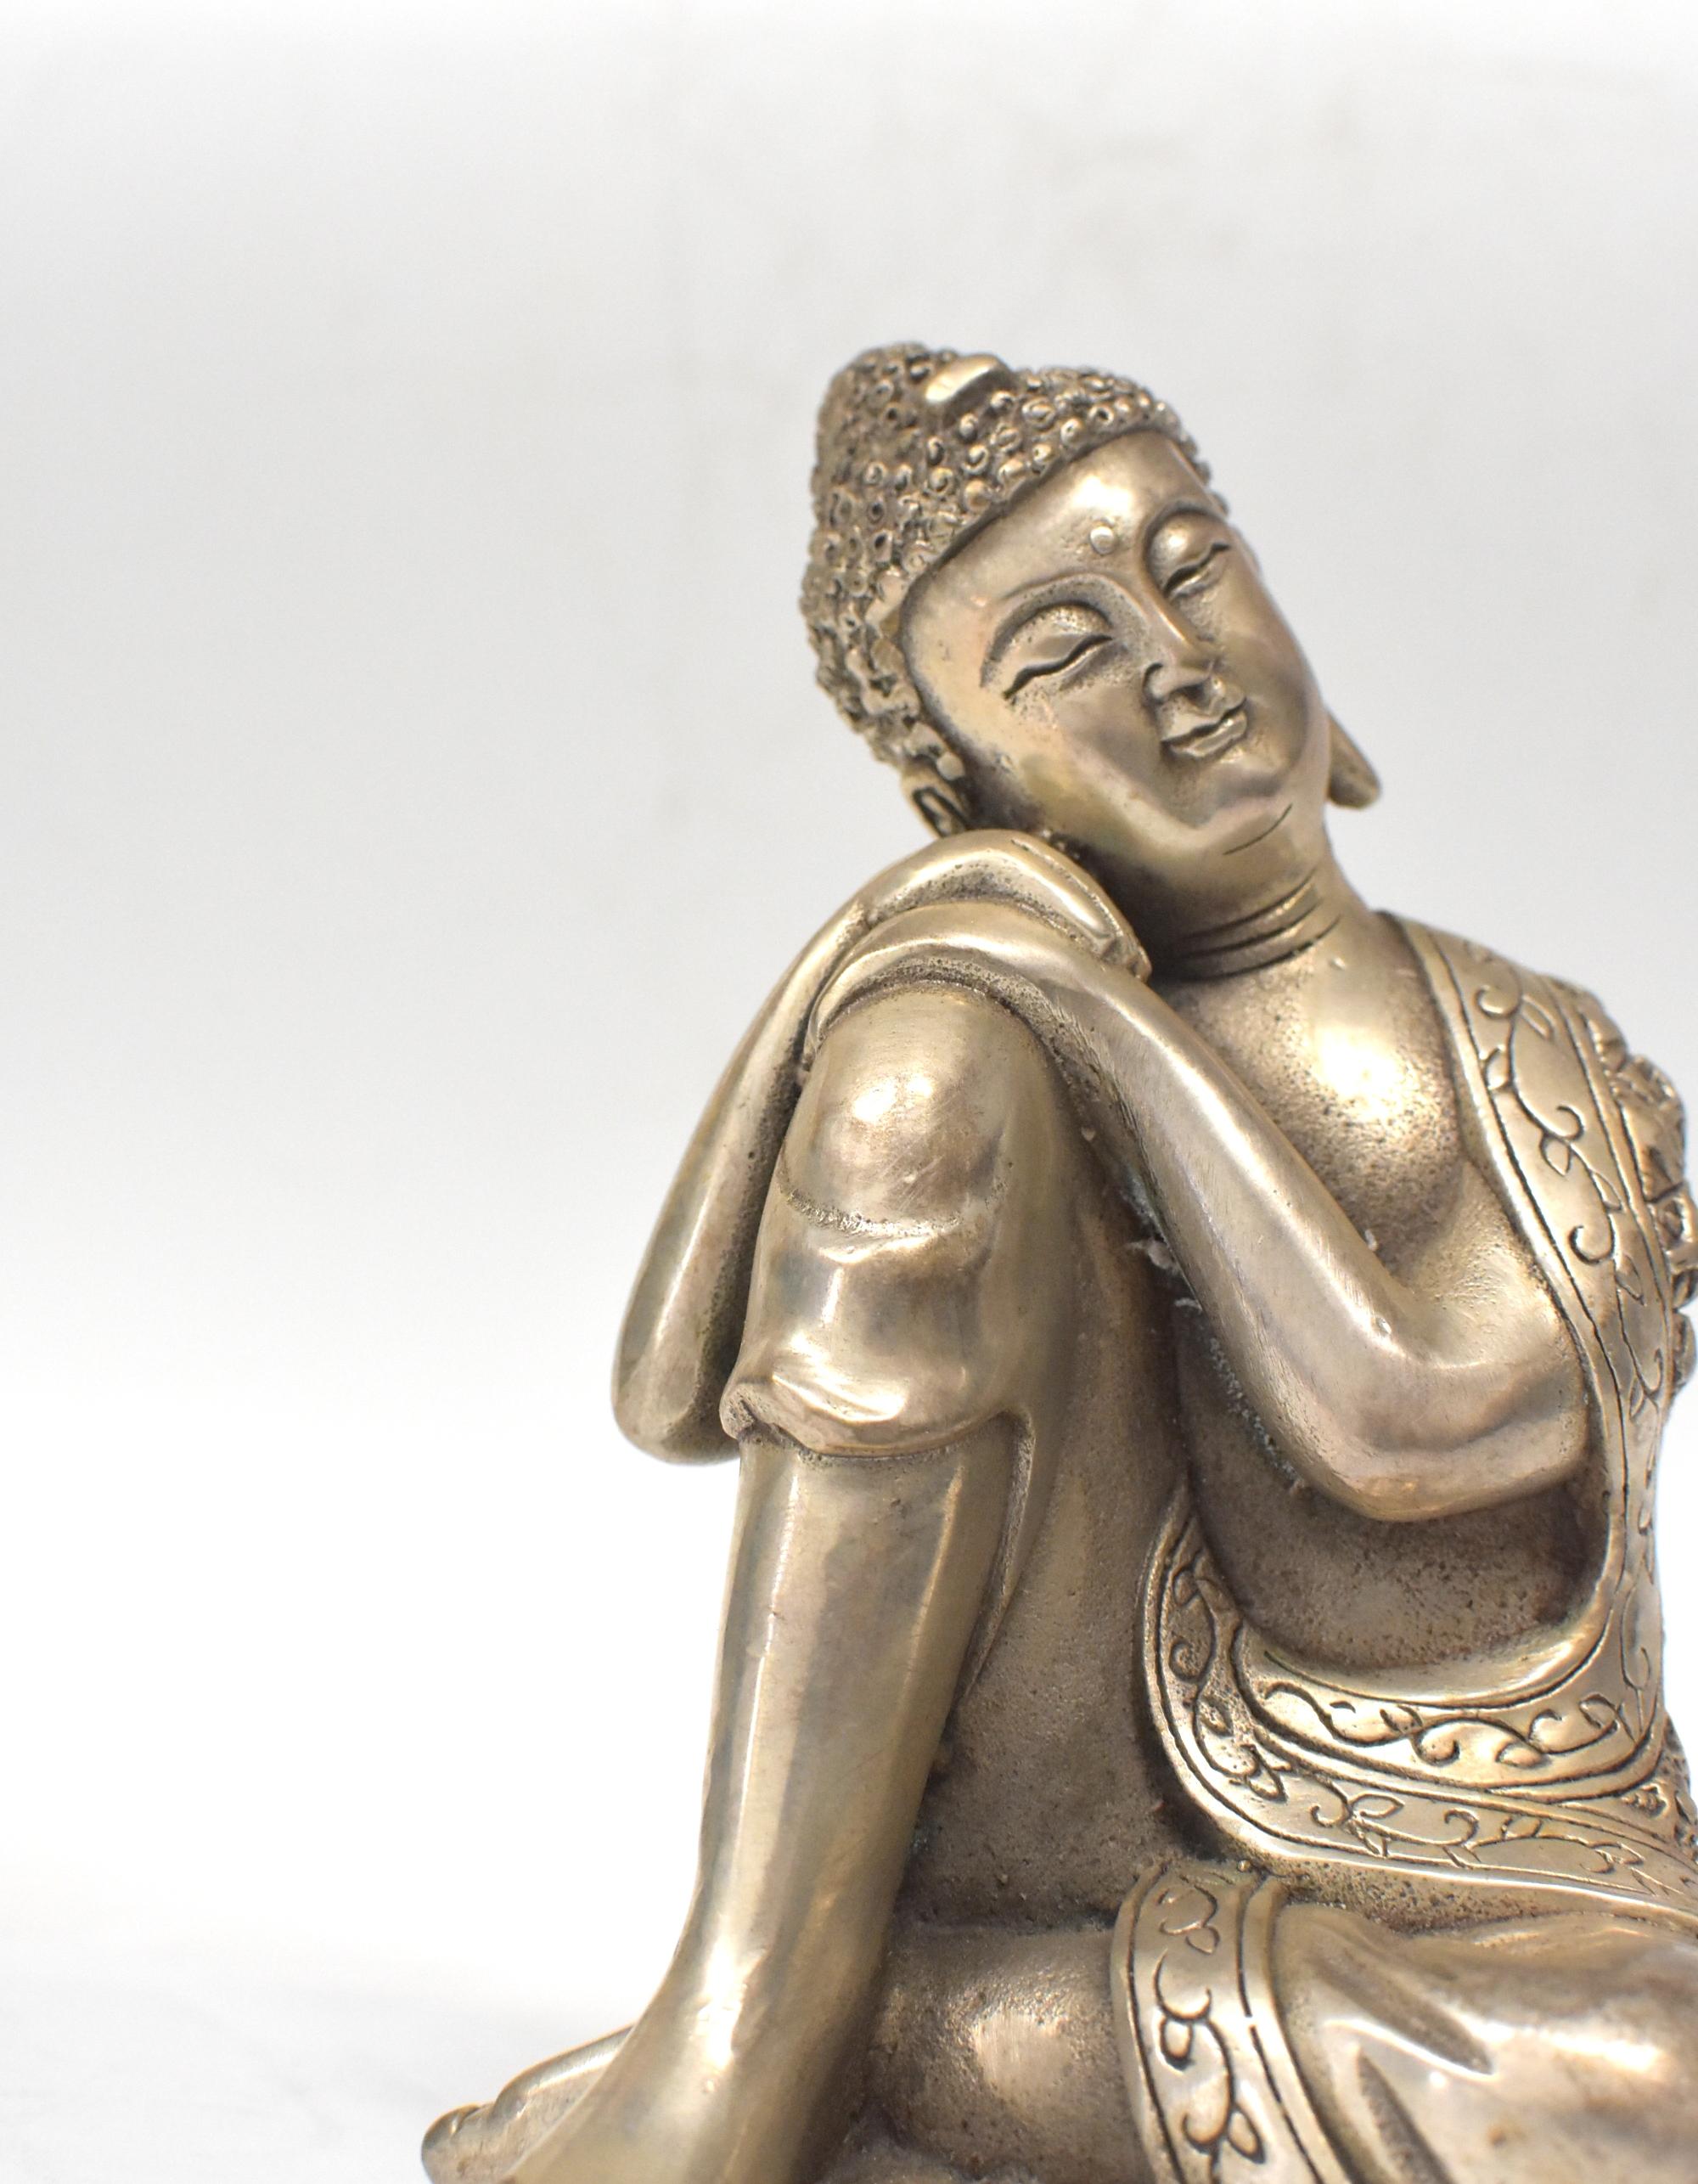 Silvered Brass Buddha Statue, a Thinking Buddha 2